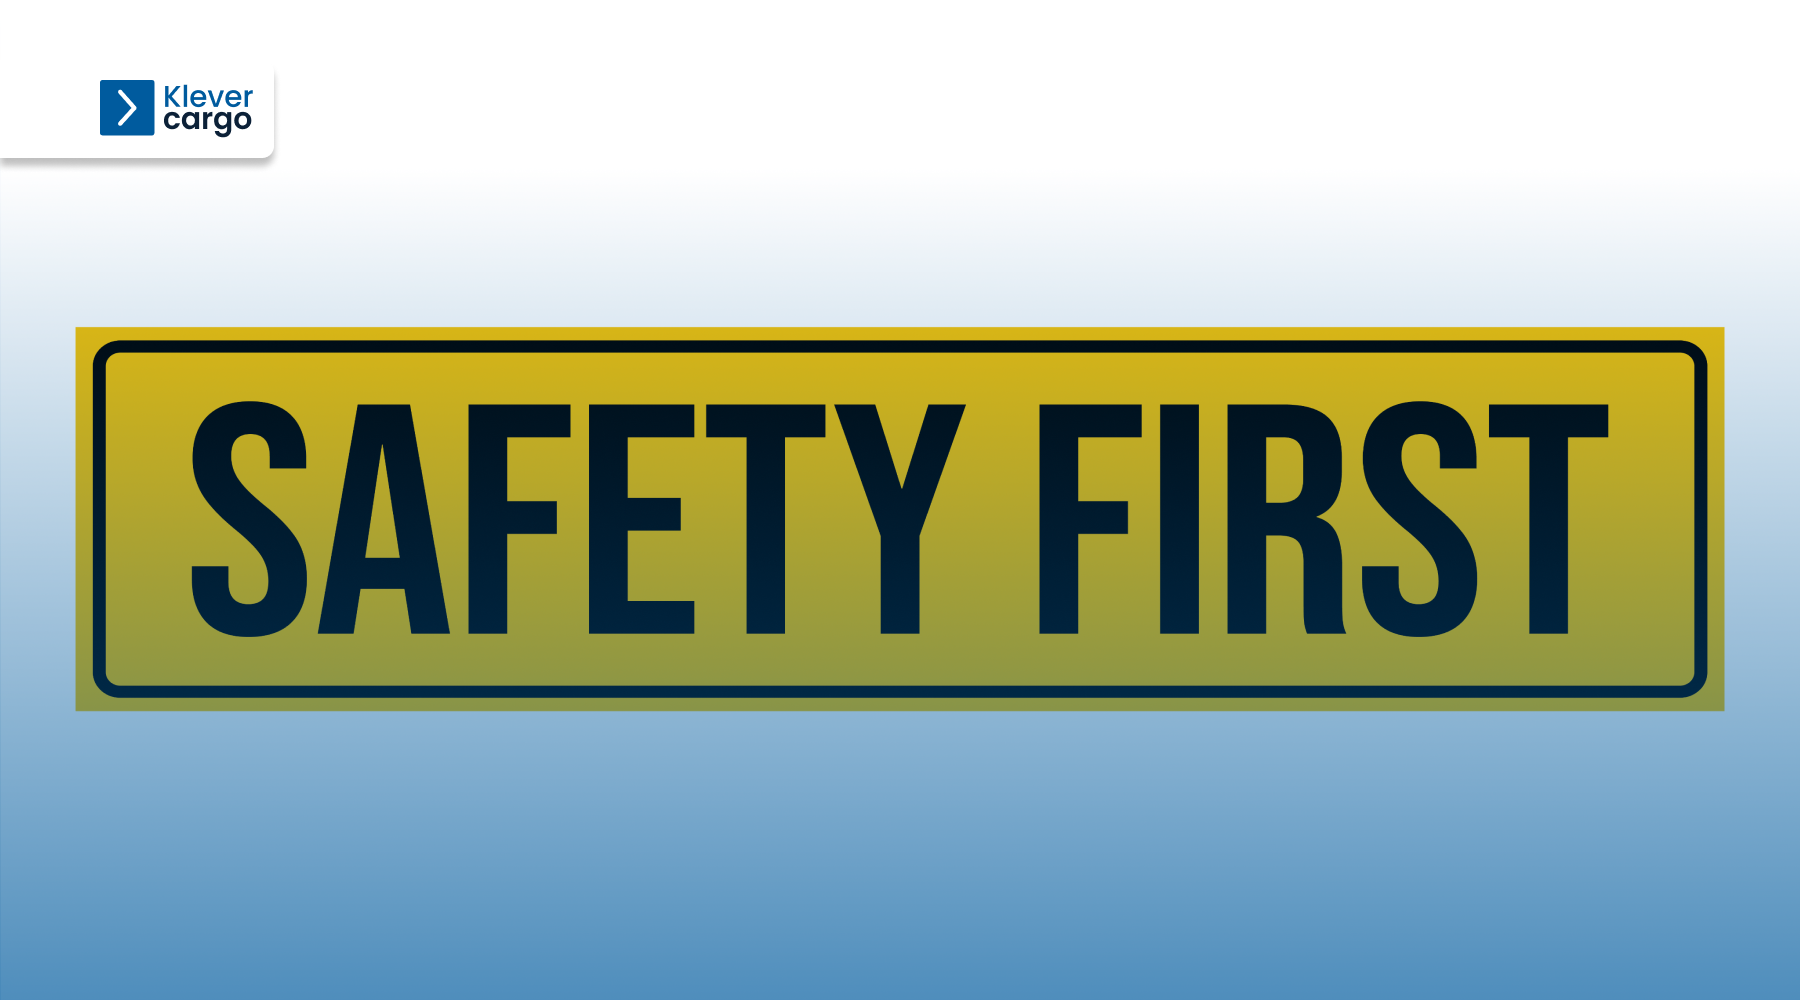 Safety first KleverCargo